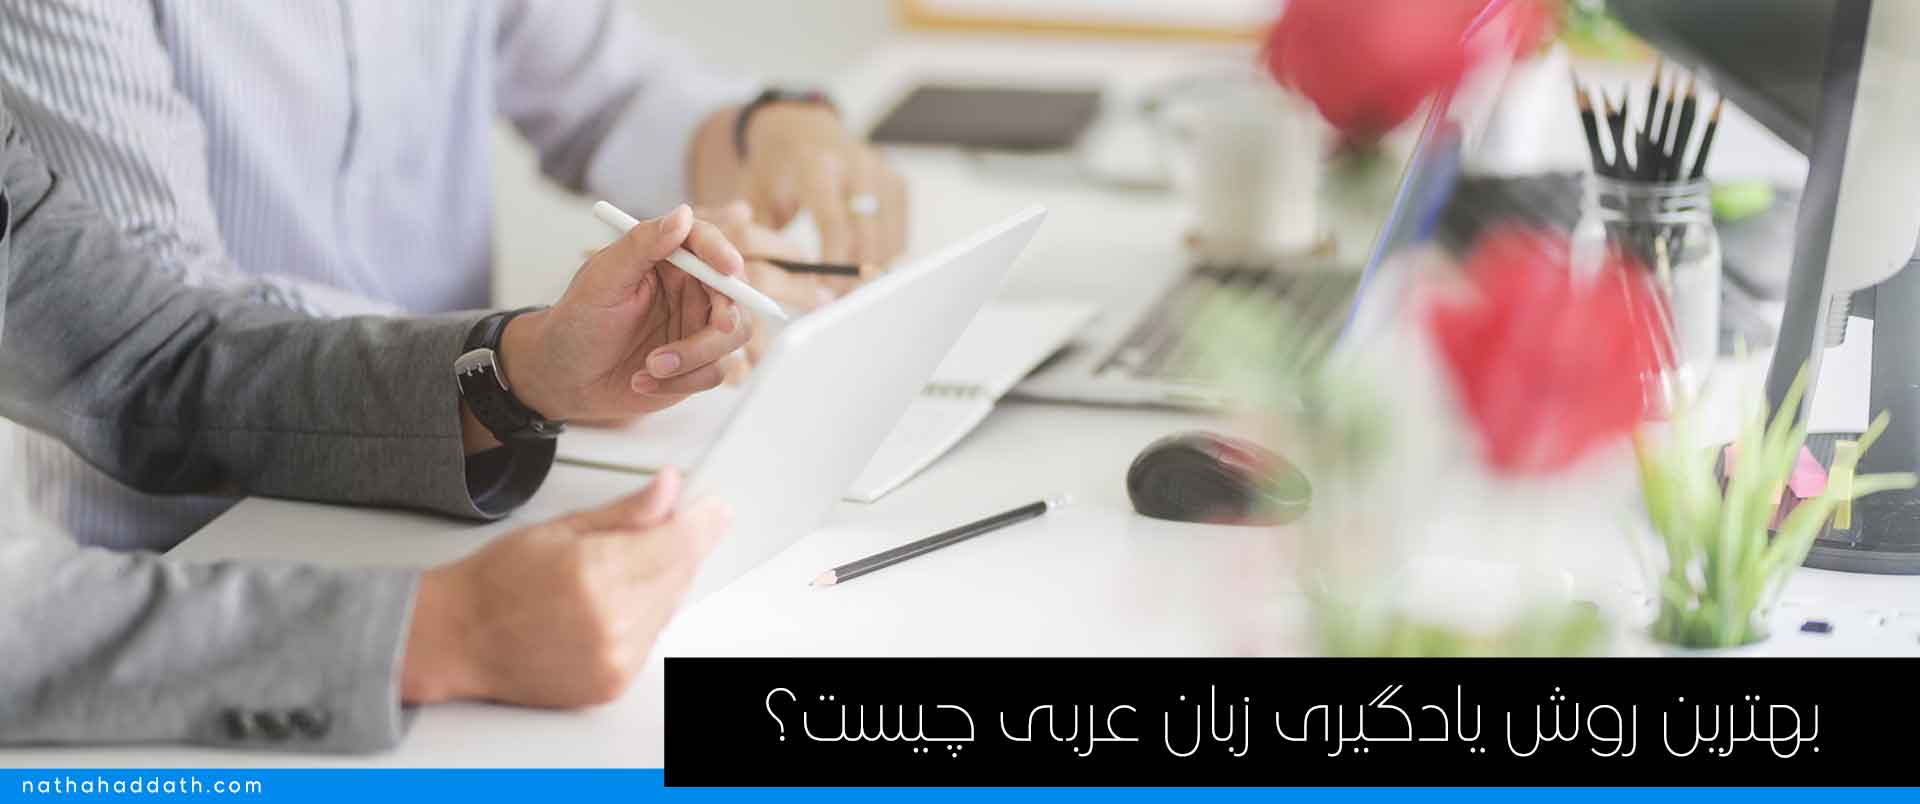 بهترین روش یادگیری زبان عربی